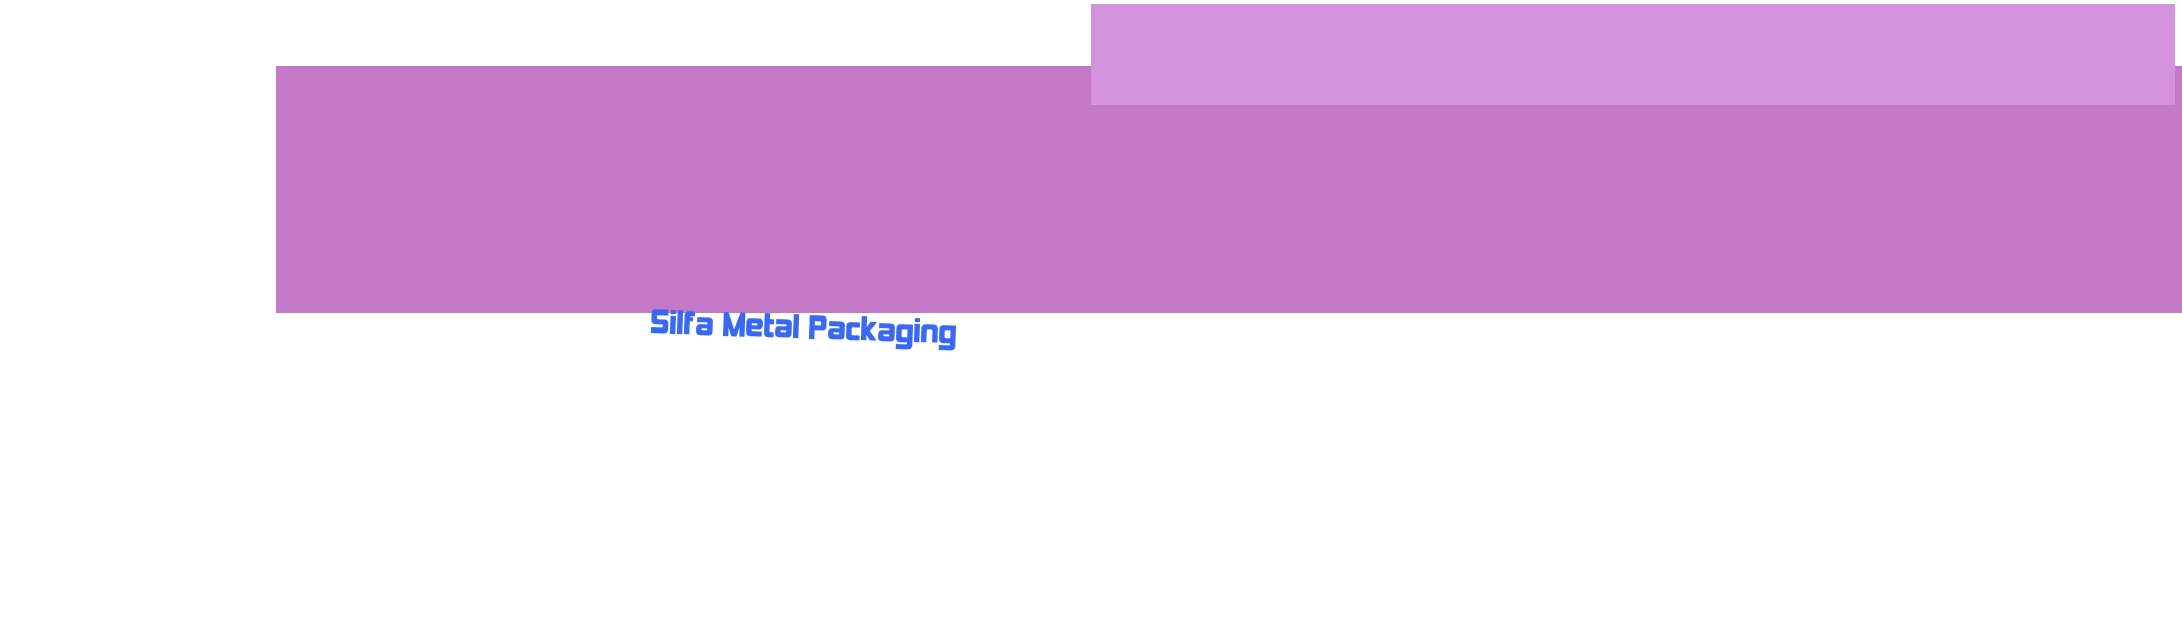 logo Silfa Metal Packaging